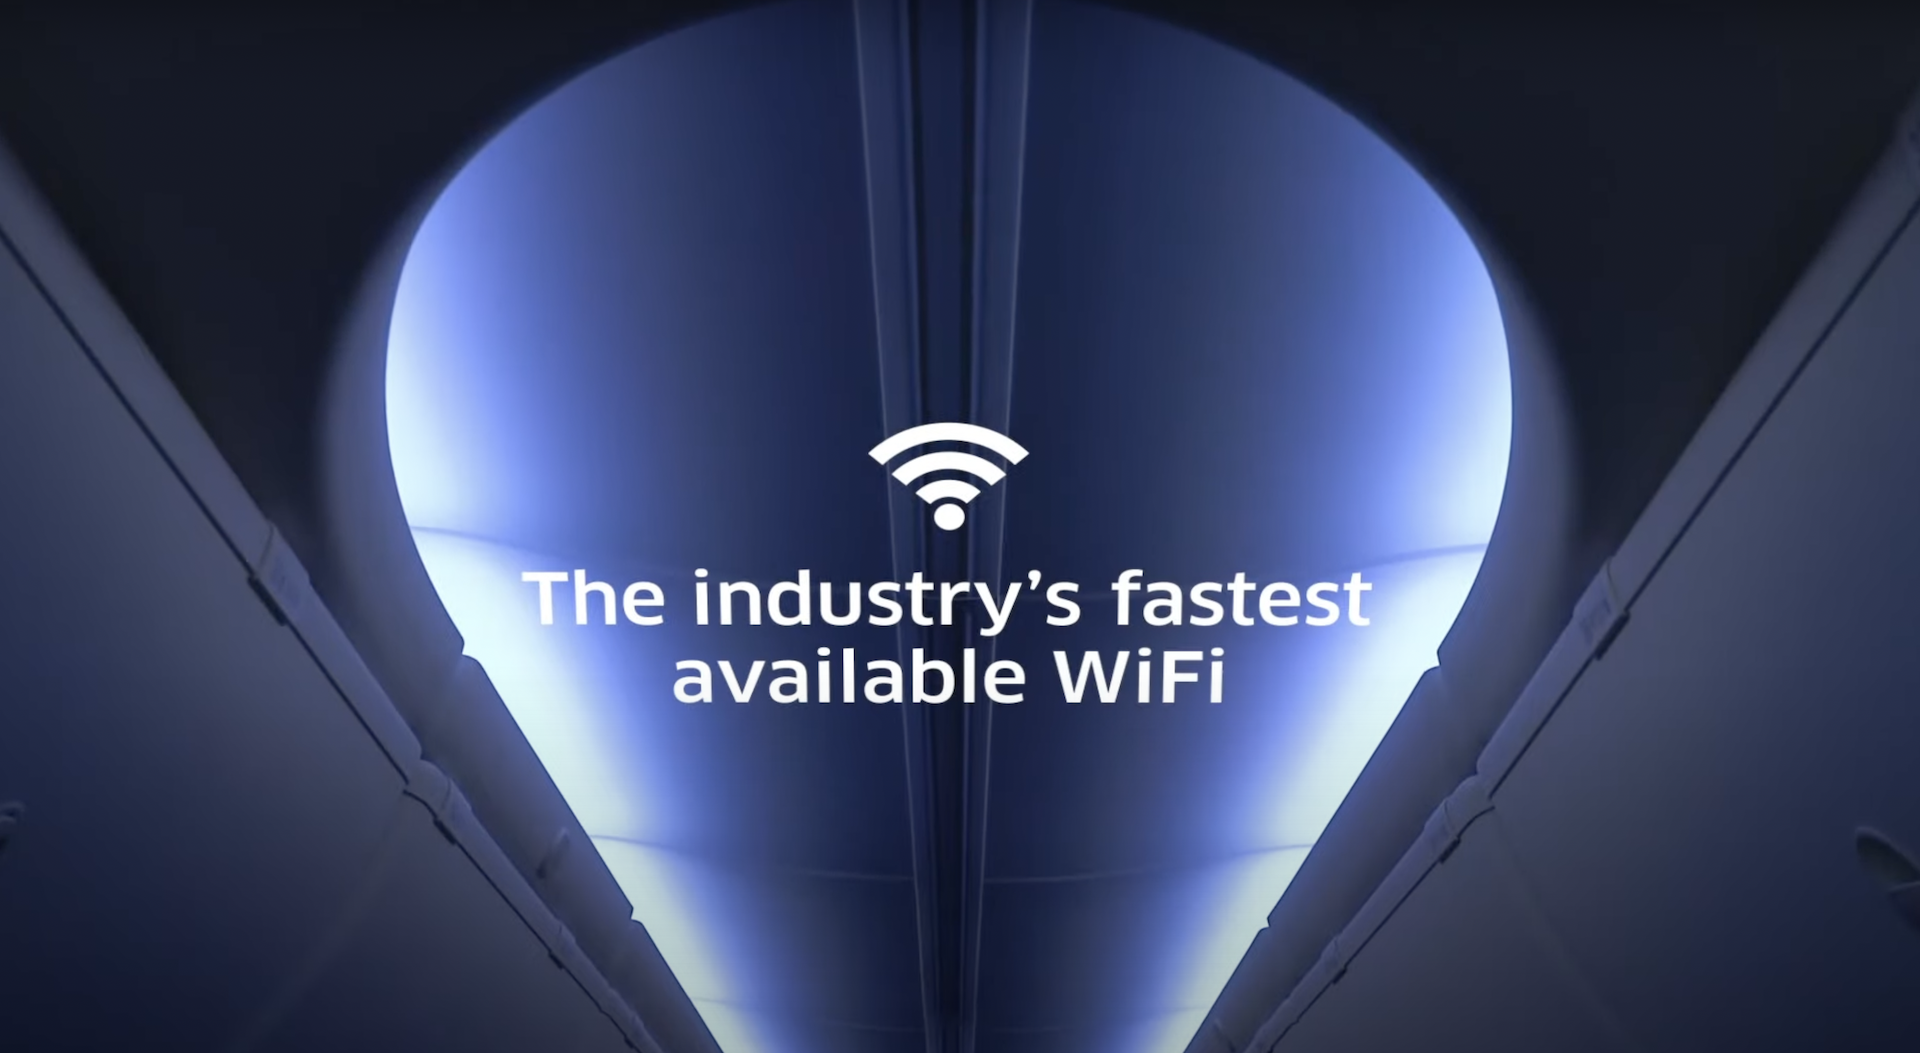 Los nuevos aviones de United: Wi-Fi, Bluetooth y más espacio. Video